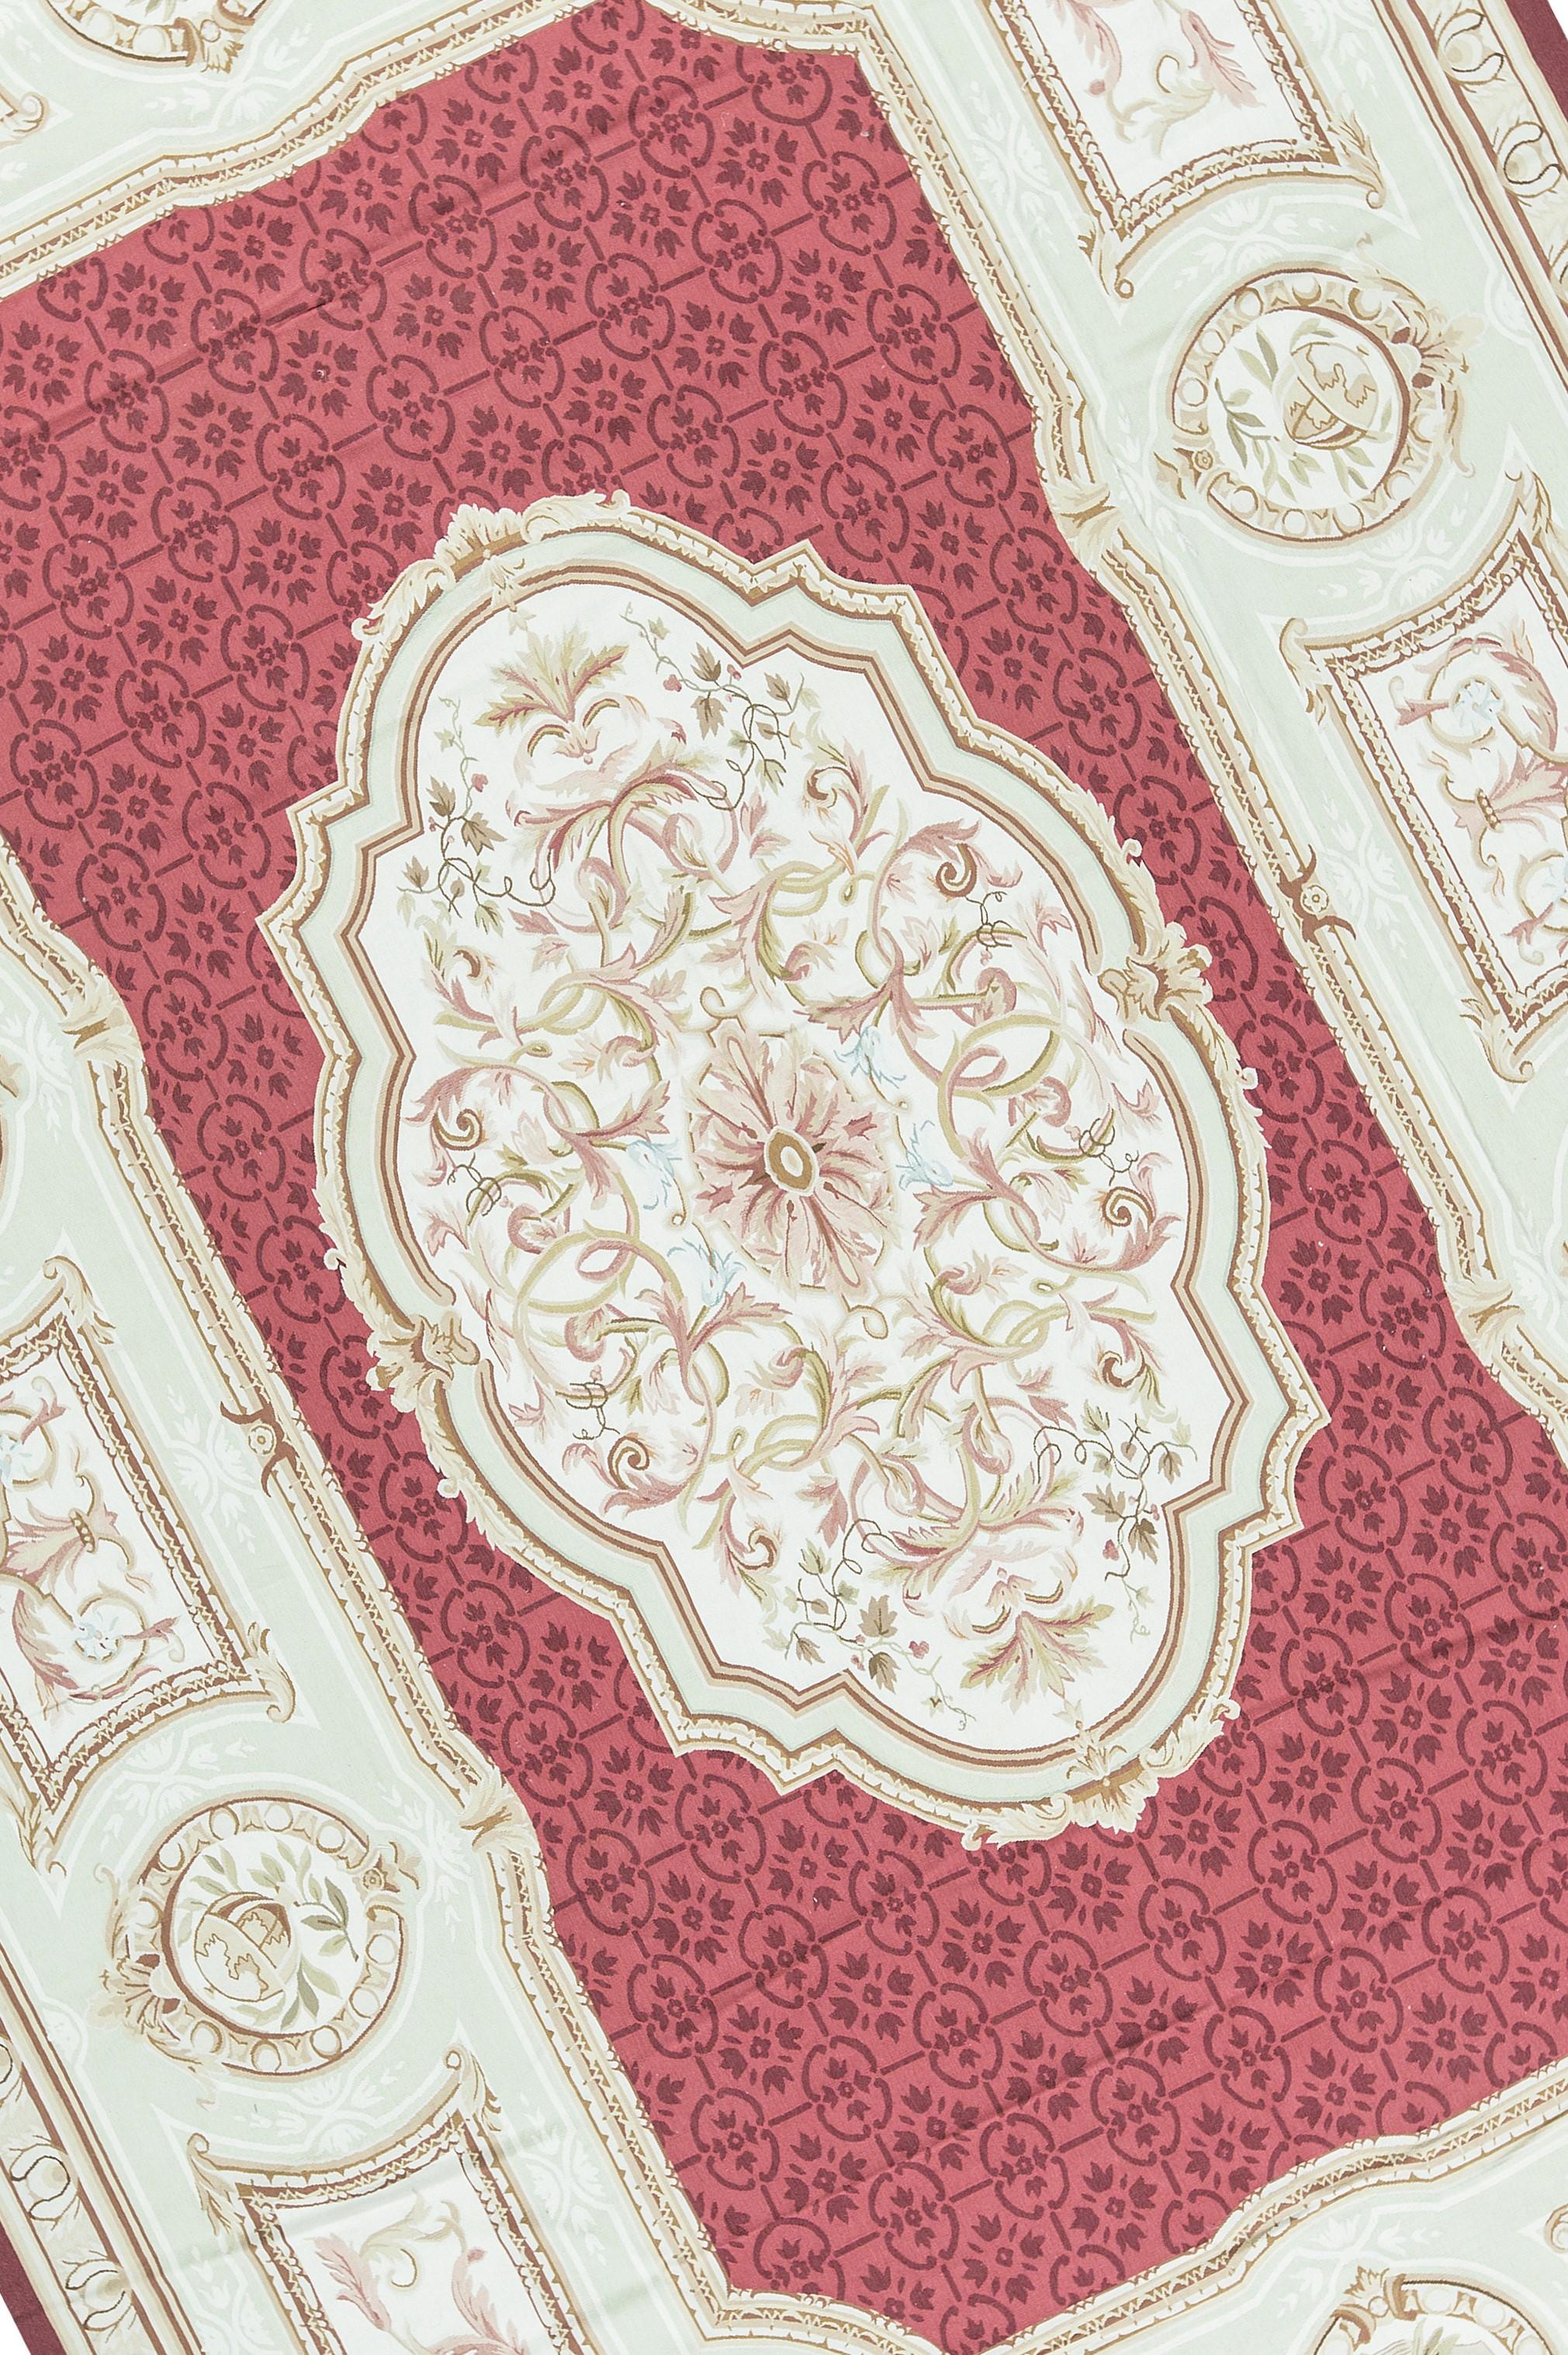 Recréation tissée à la main du classique tapis français d'Aubusson à tissage plat que l'on trouve dans les maisons et les palais les plus raffinés depuis la fin du XVIIe siècle. Taille 11' 11